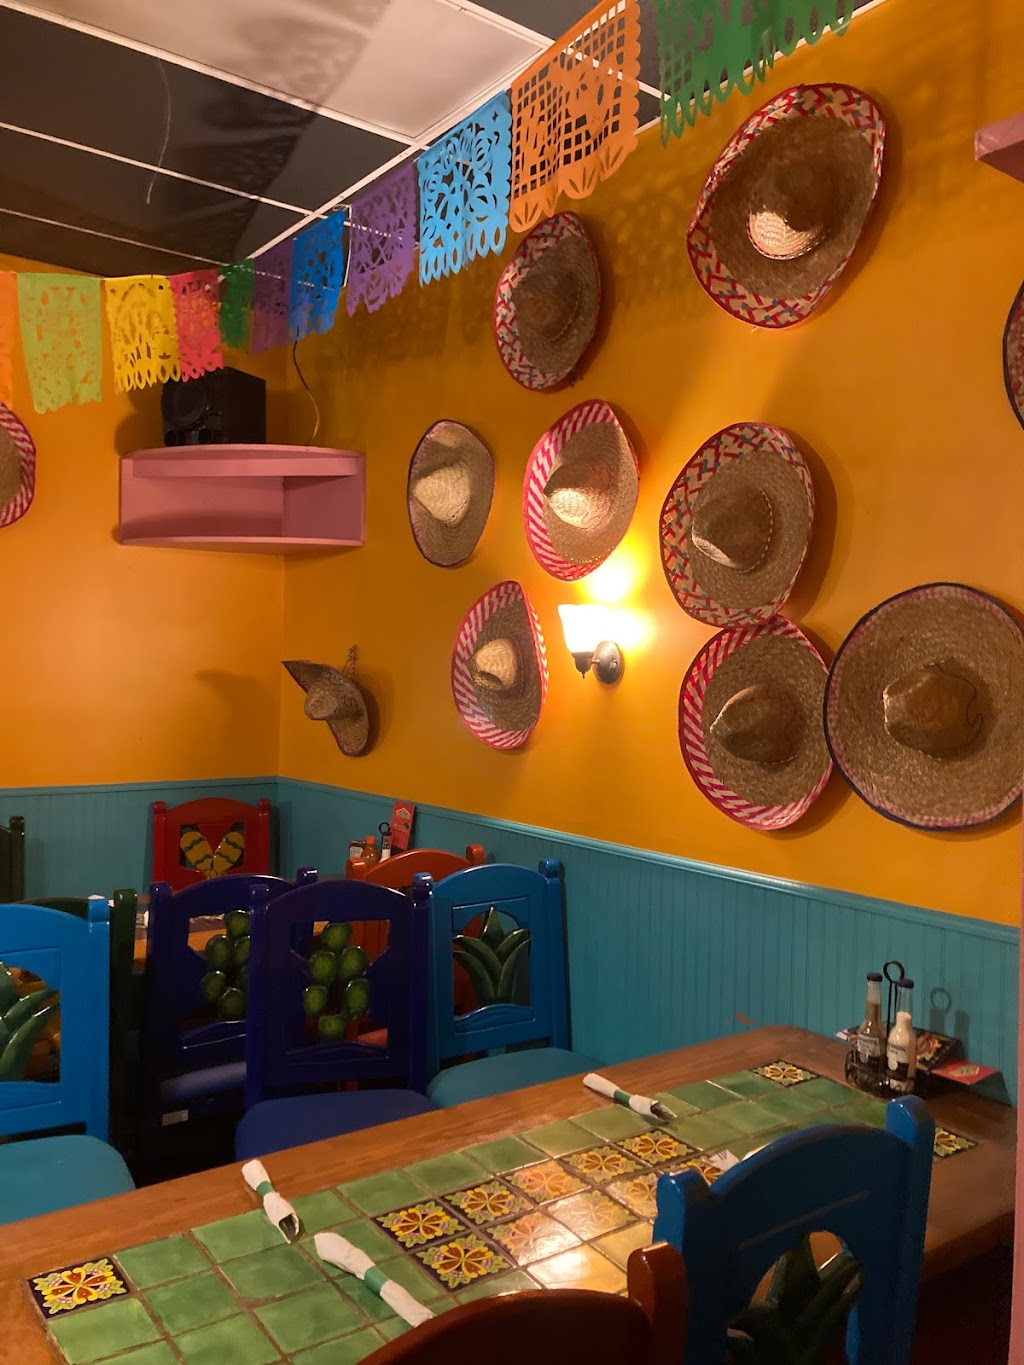 Monterrey Mexican Restaurant | 170 Riverside Ave, Bristol, CT 06010 | Phone: (860) 585-0710